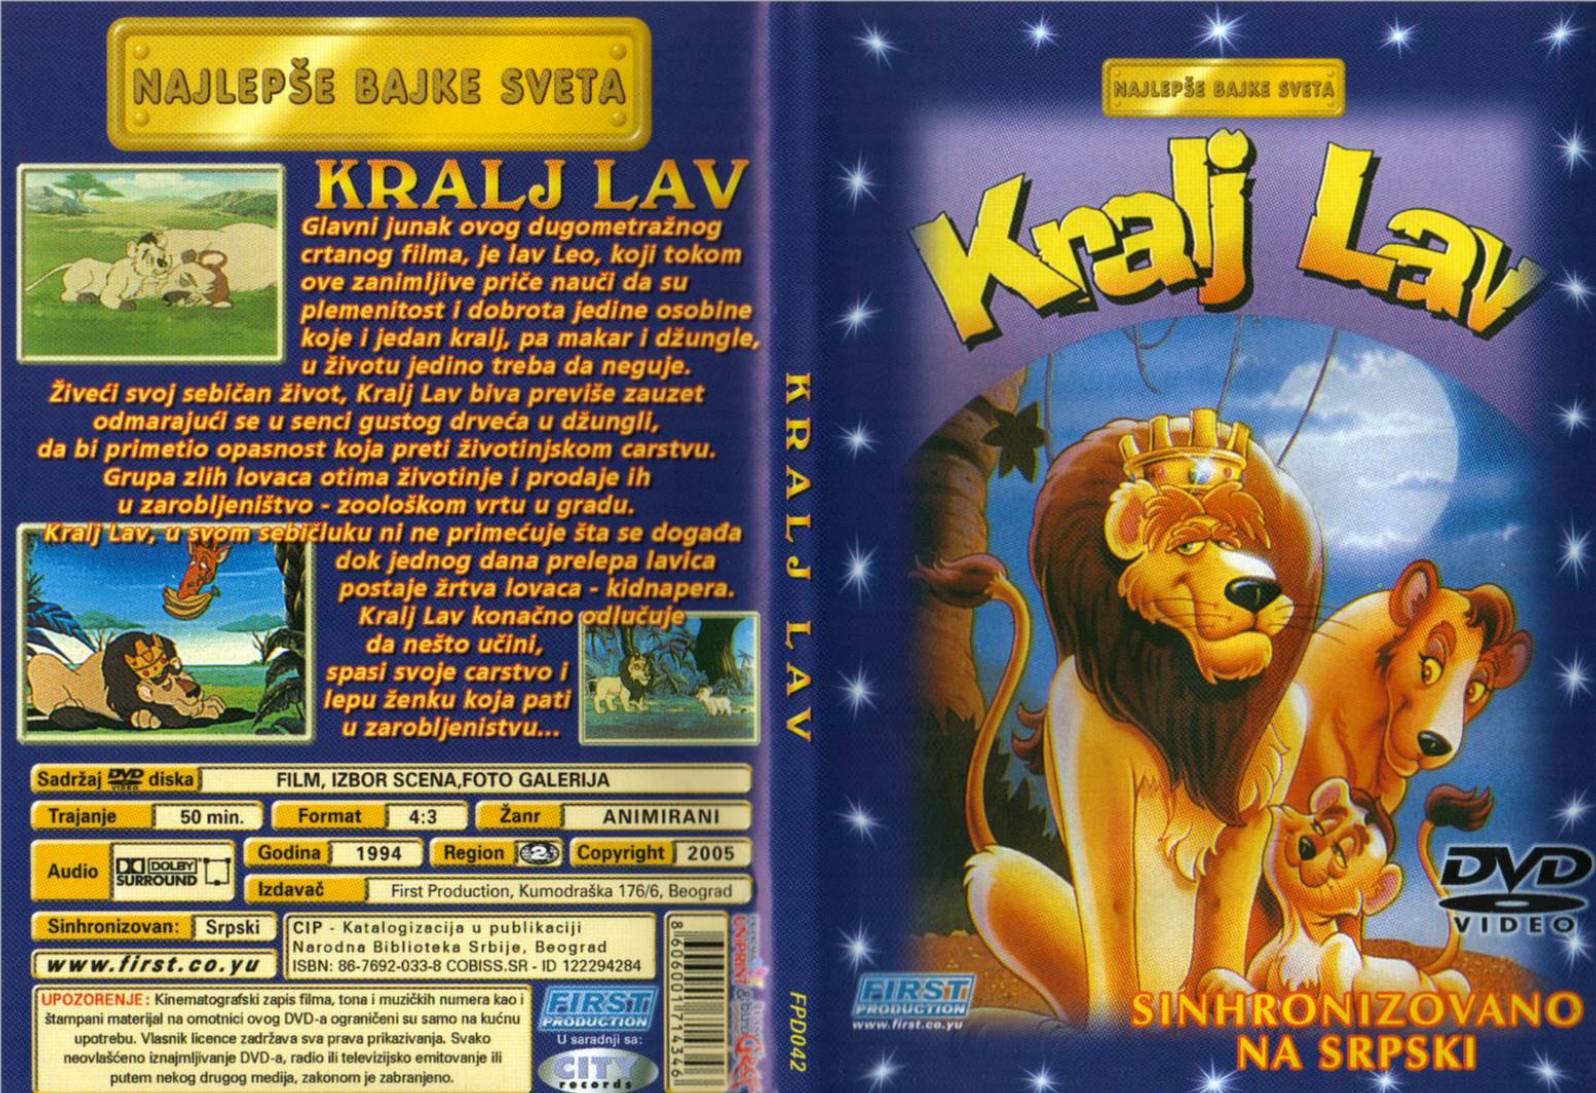 Click to view full size image -  DVD Cover - K - DVD - KRALJ LAV.jpg - DVD - KRALJ LAV.jpg